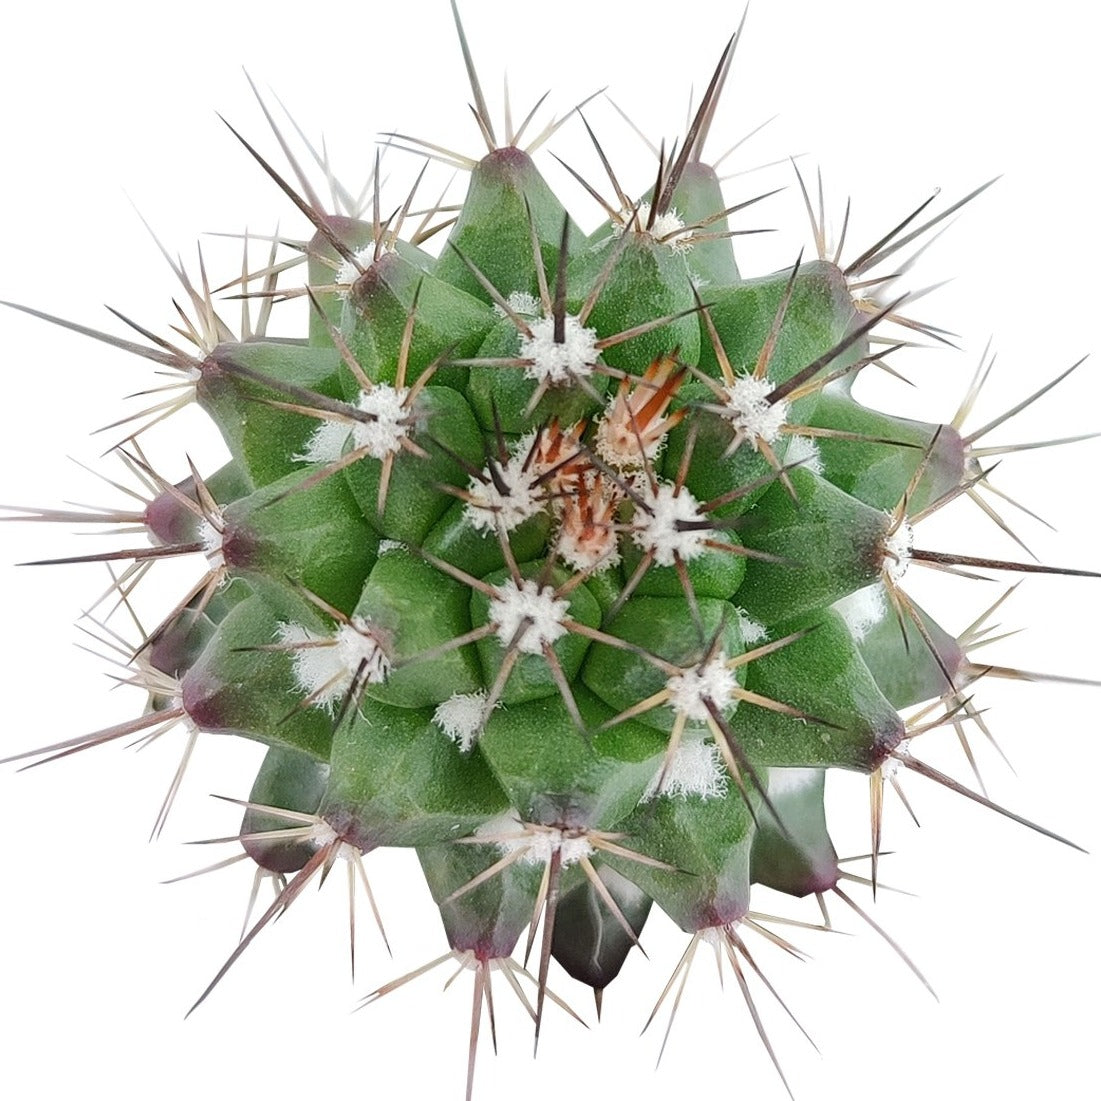 Echinocereus Pulchellus var Acanthosetus Cactus for sale, Rare Cactus, Rare Succulent, Unusual Cactus, Cactus Gift Ideas, Cactus Decor Ideas , cactus, cactus succulent, succulent cactus, cacti, cactus and succulents, succulents box, succulent shop, buy succulents online